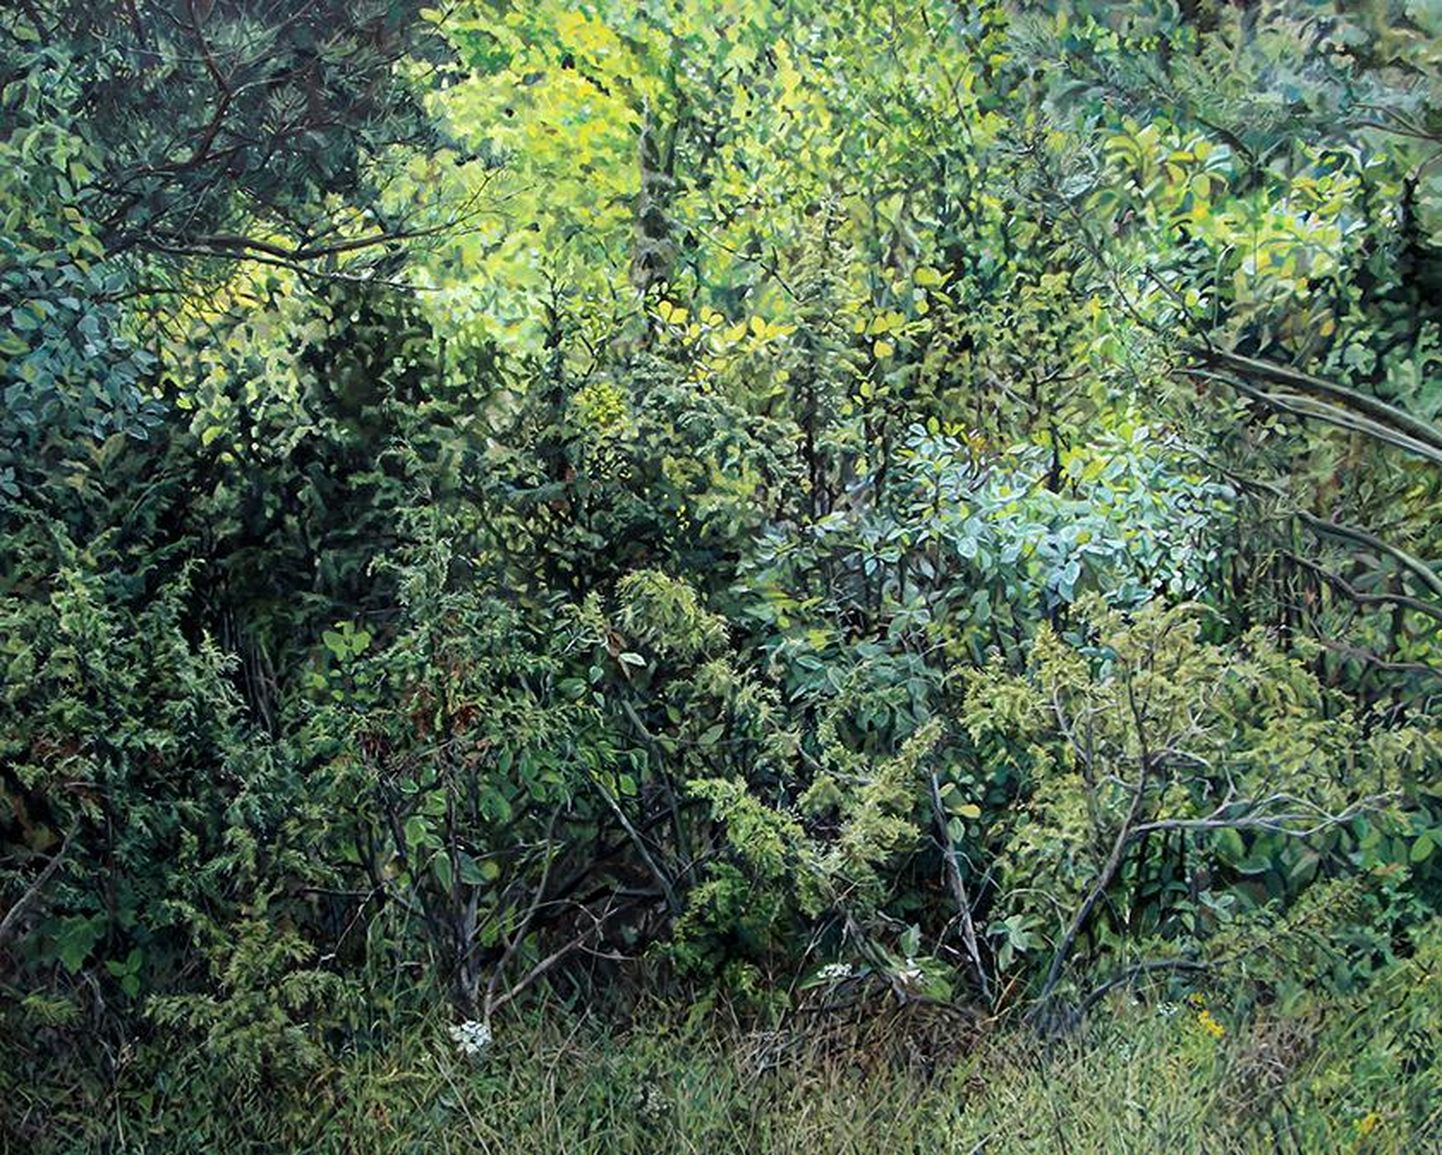 Esmaspäeval avatakse Sakala keskuses Jane Remmi maalinäitus. Pildil on Jane Remmi maali "Roheline" repro.